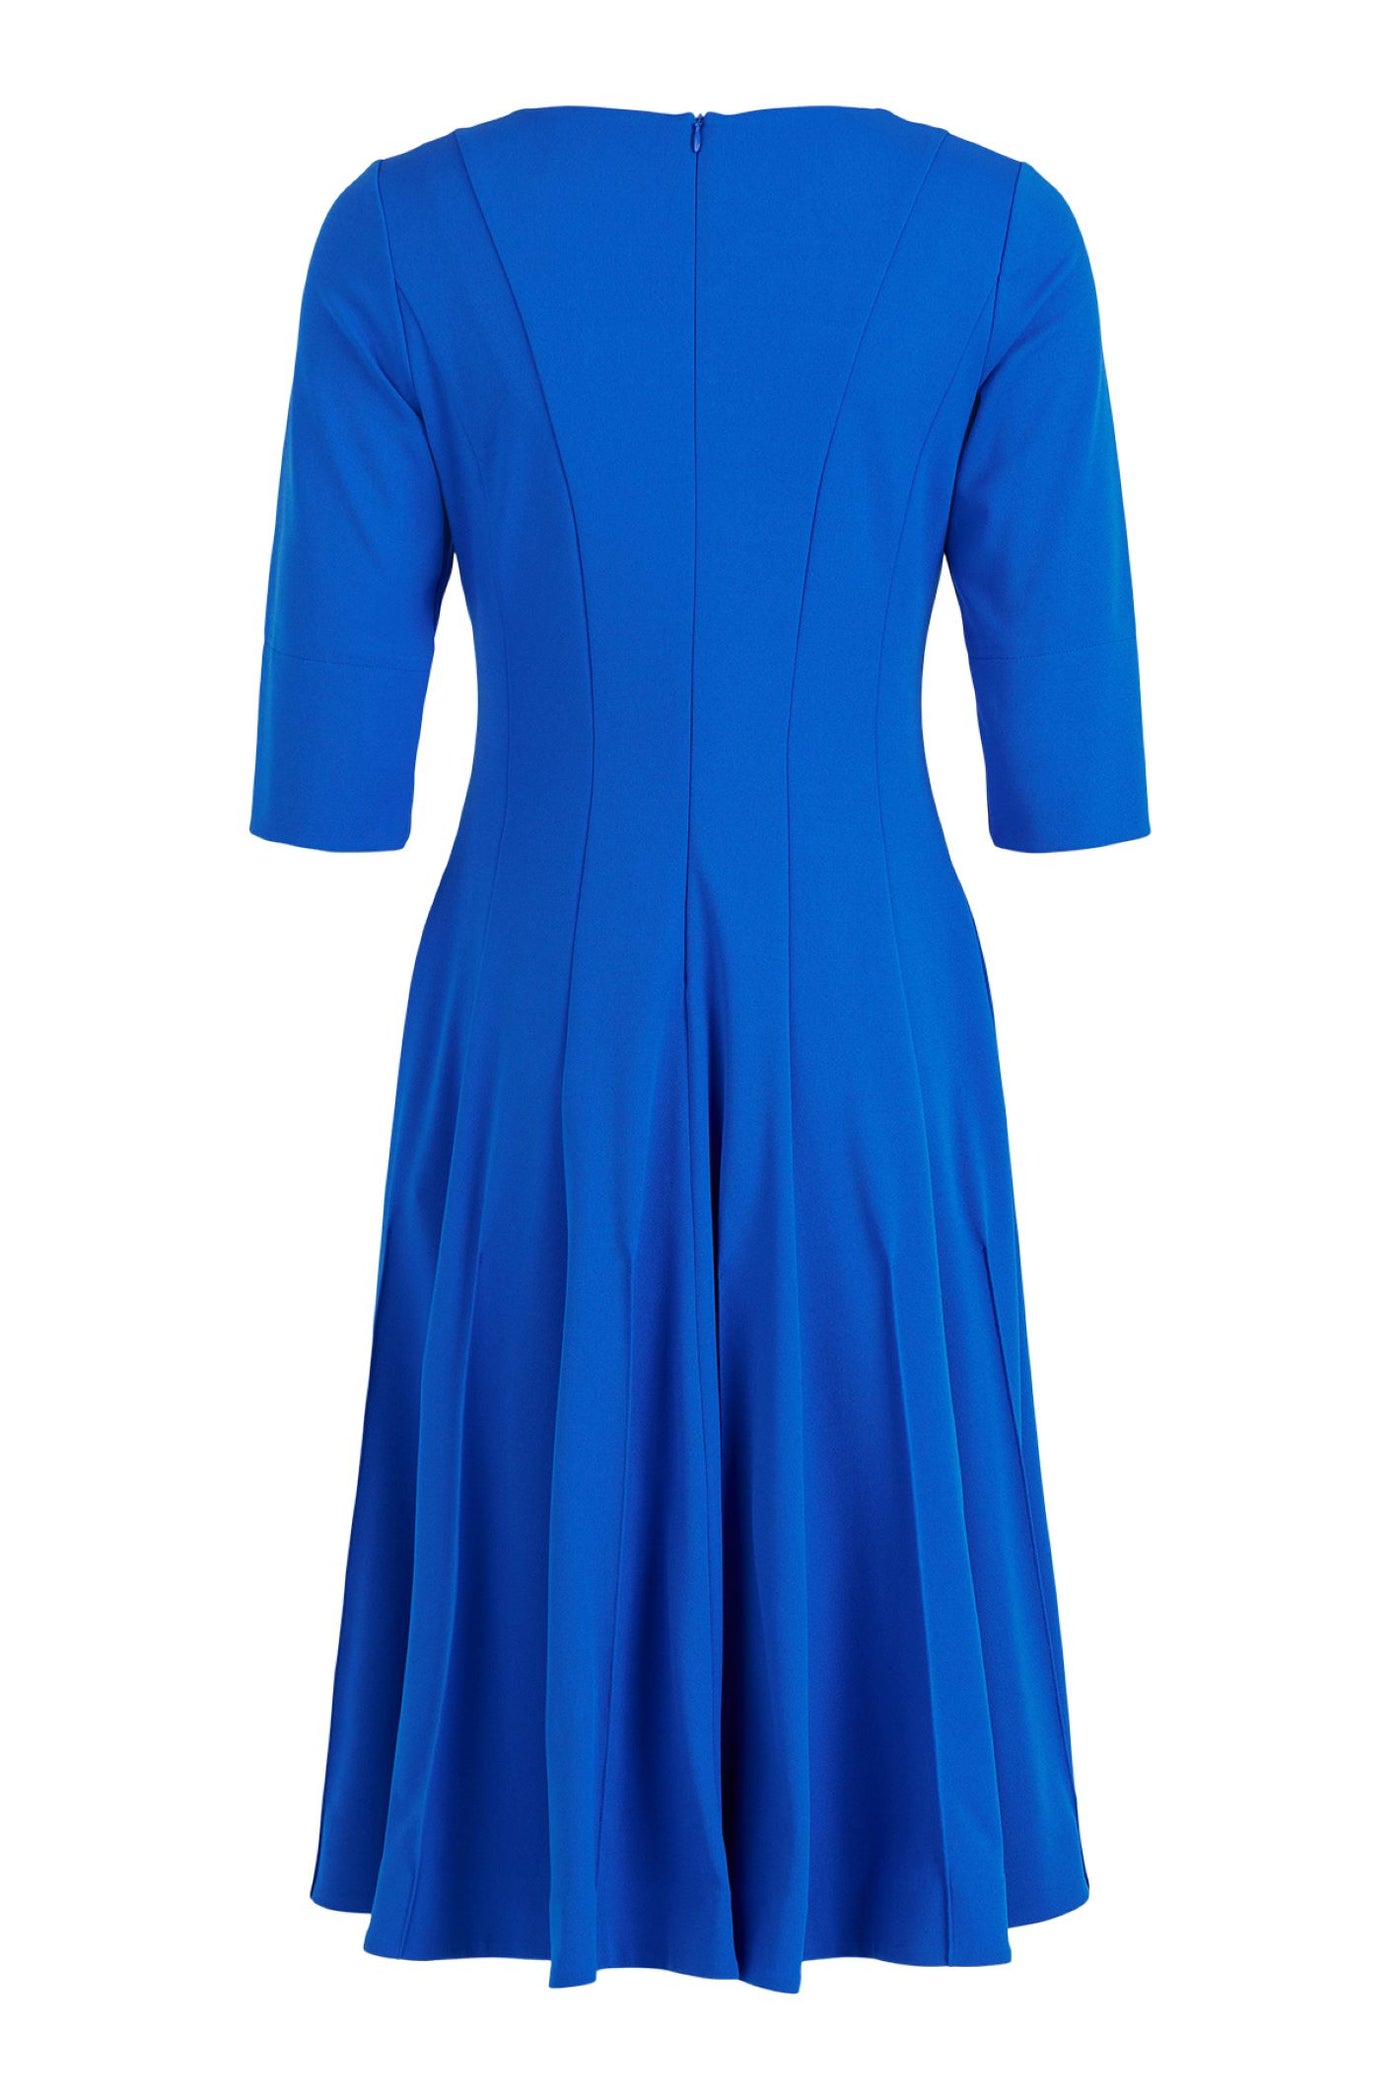 Tia 78759 Blue Sleeved V Neck Dress